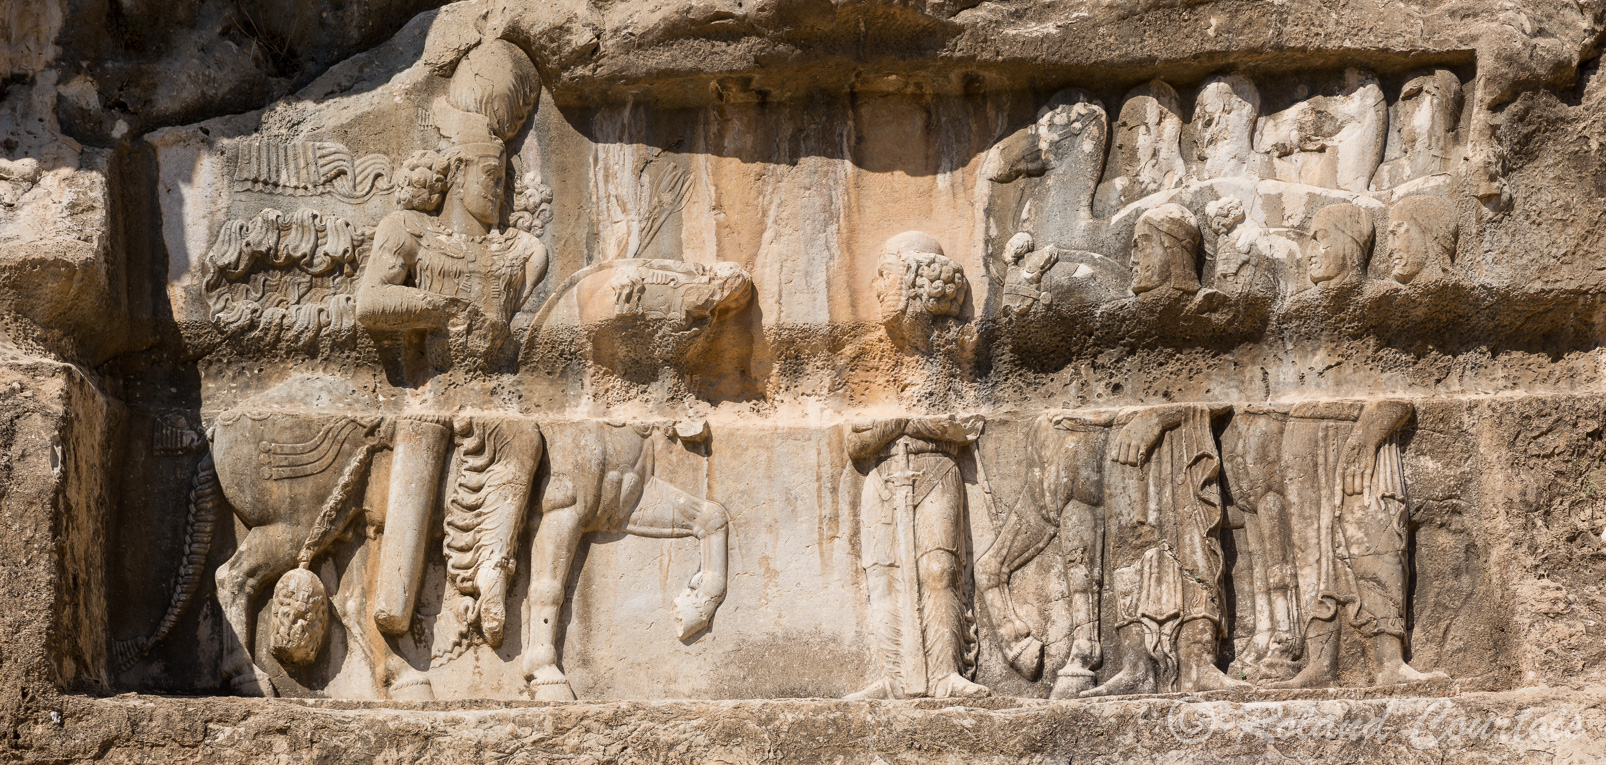 Sur le relief suivant, Bahram II reçoit la soumission de nomades arabes venus avec leurs chevaux et leurs chameaux.